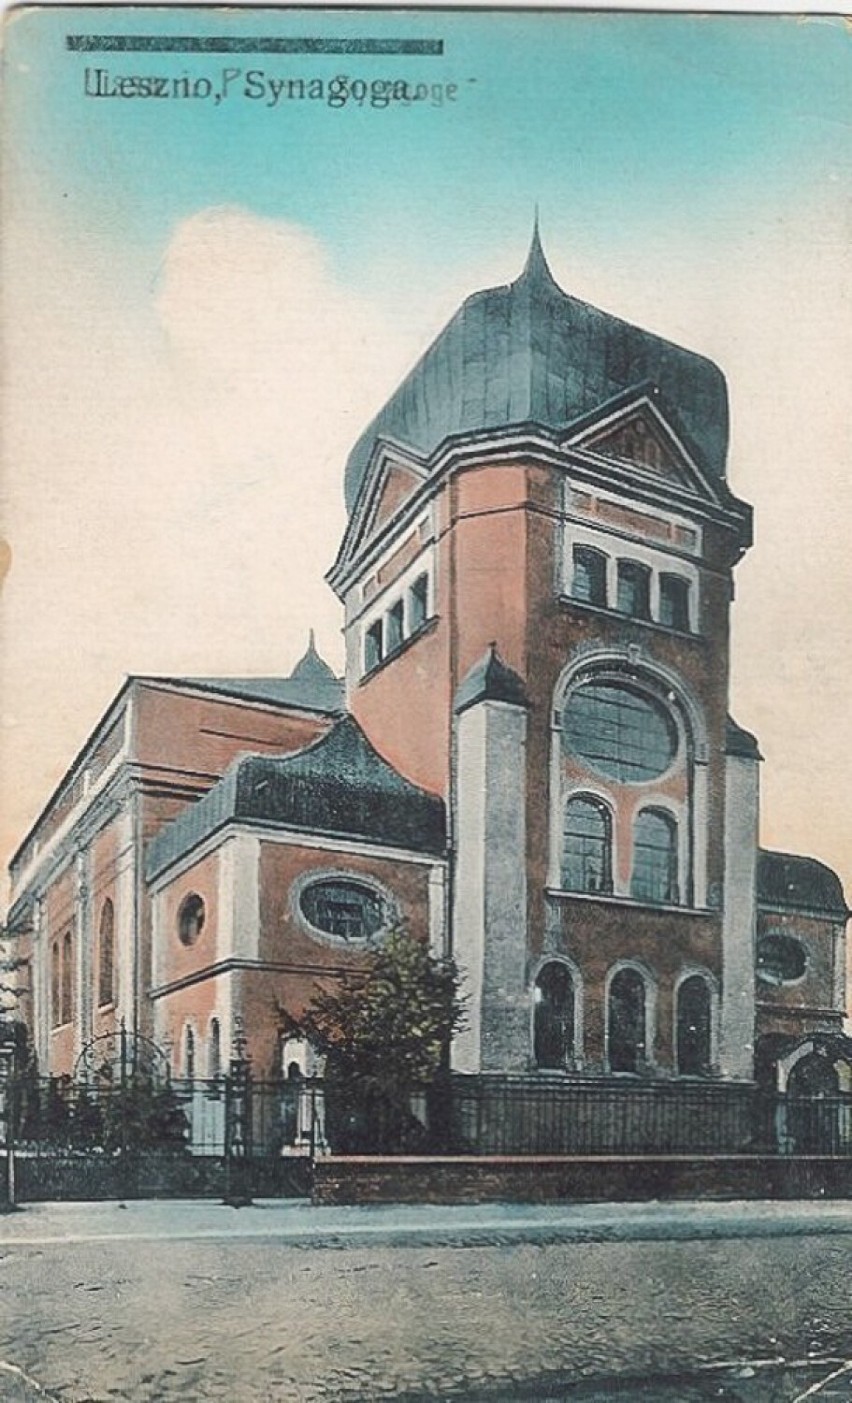 Narutowicza w Lesznie, kiedyś synagoga, dziś muzeum